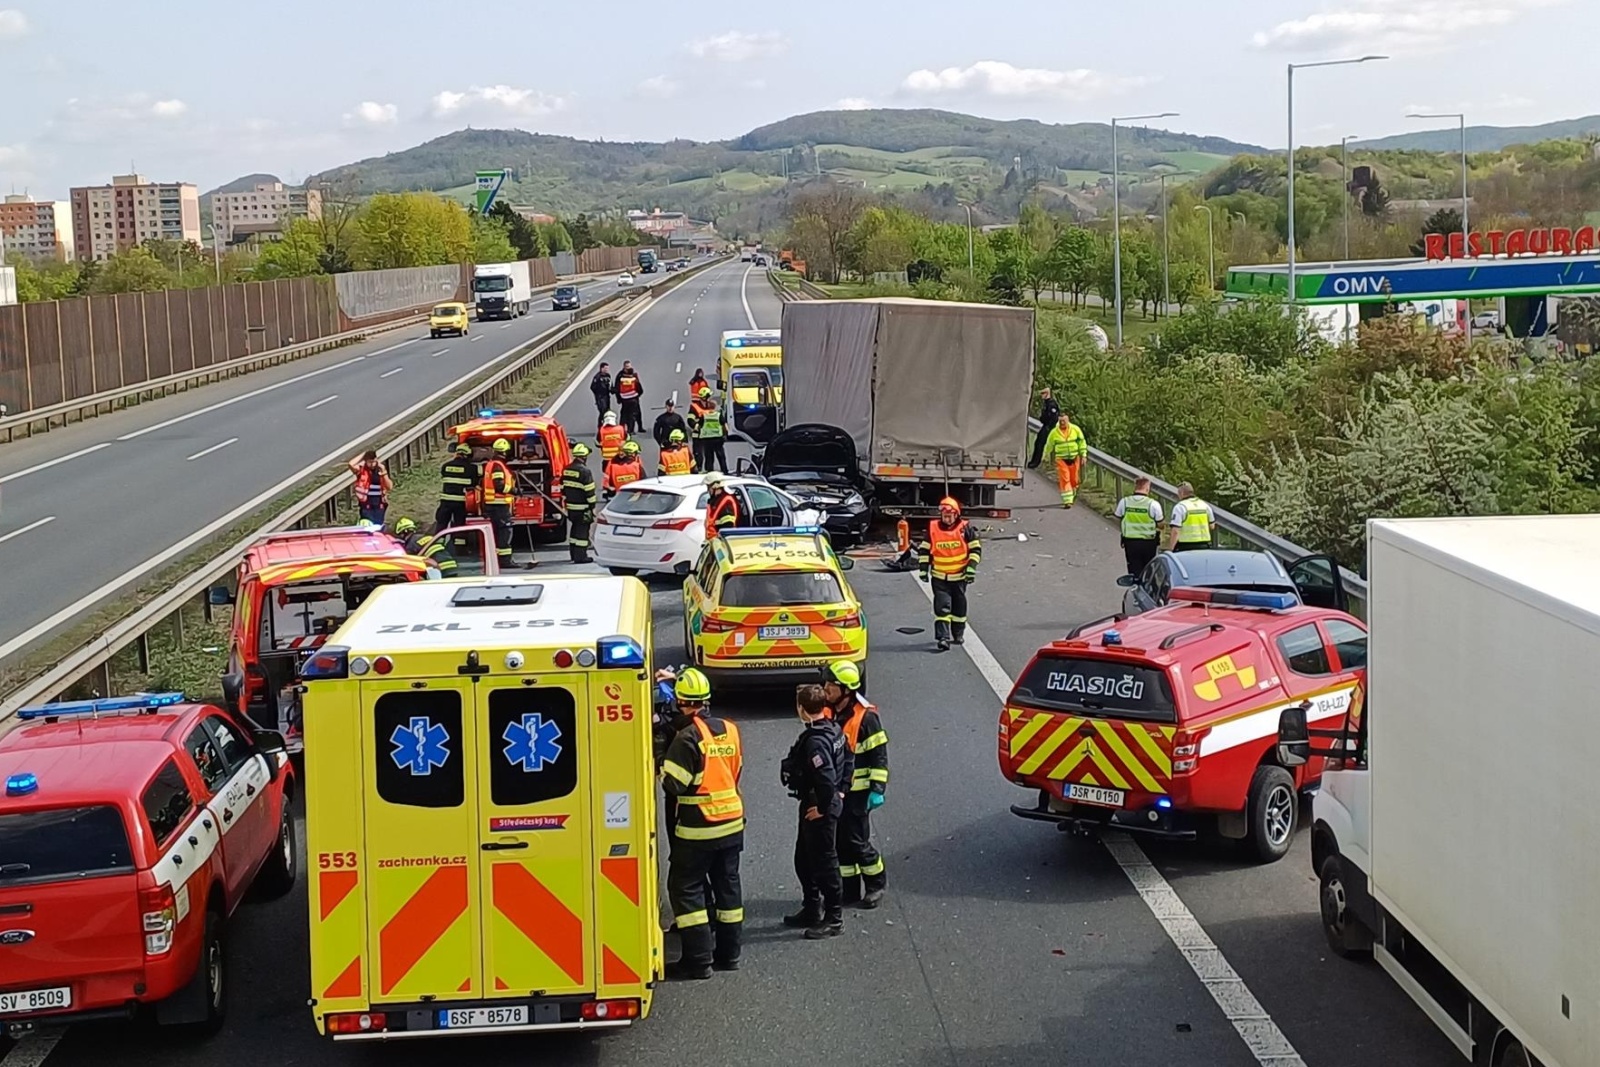 110424-Hromadná nehoda čtyř osobních a jednoho nákladního vozidla na plzeňské dálnici D5 u Berouna ve směru do Prahy.jpg